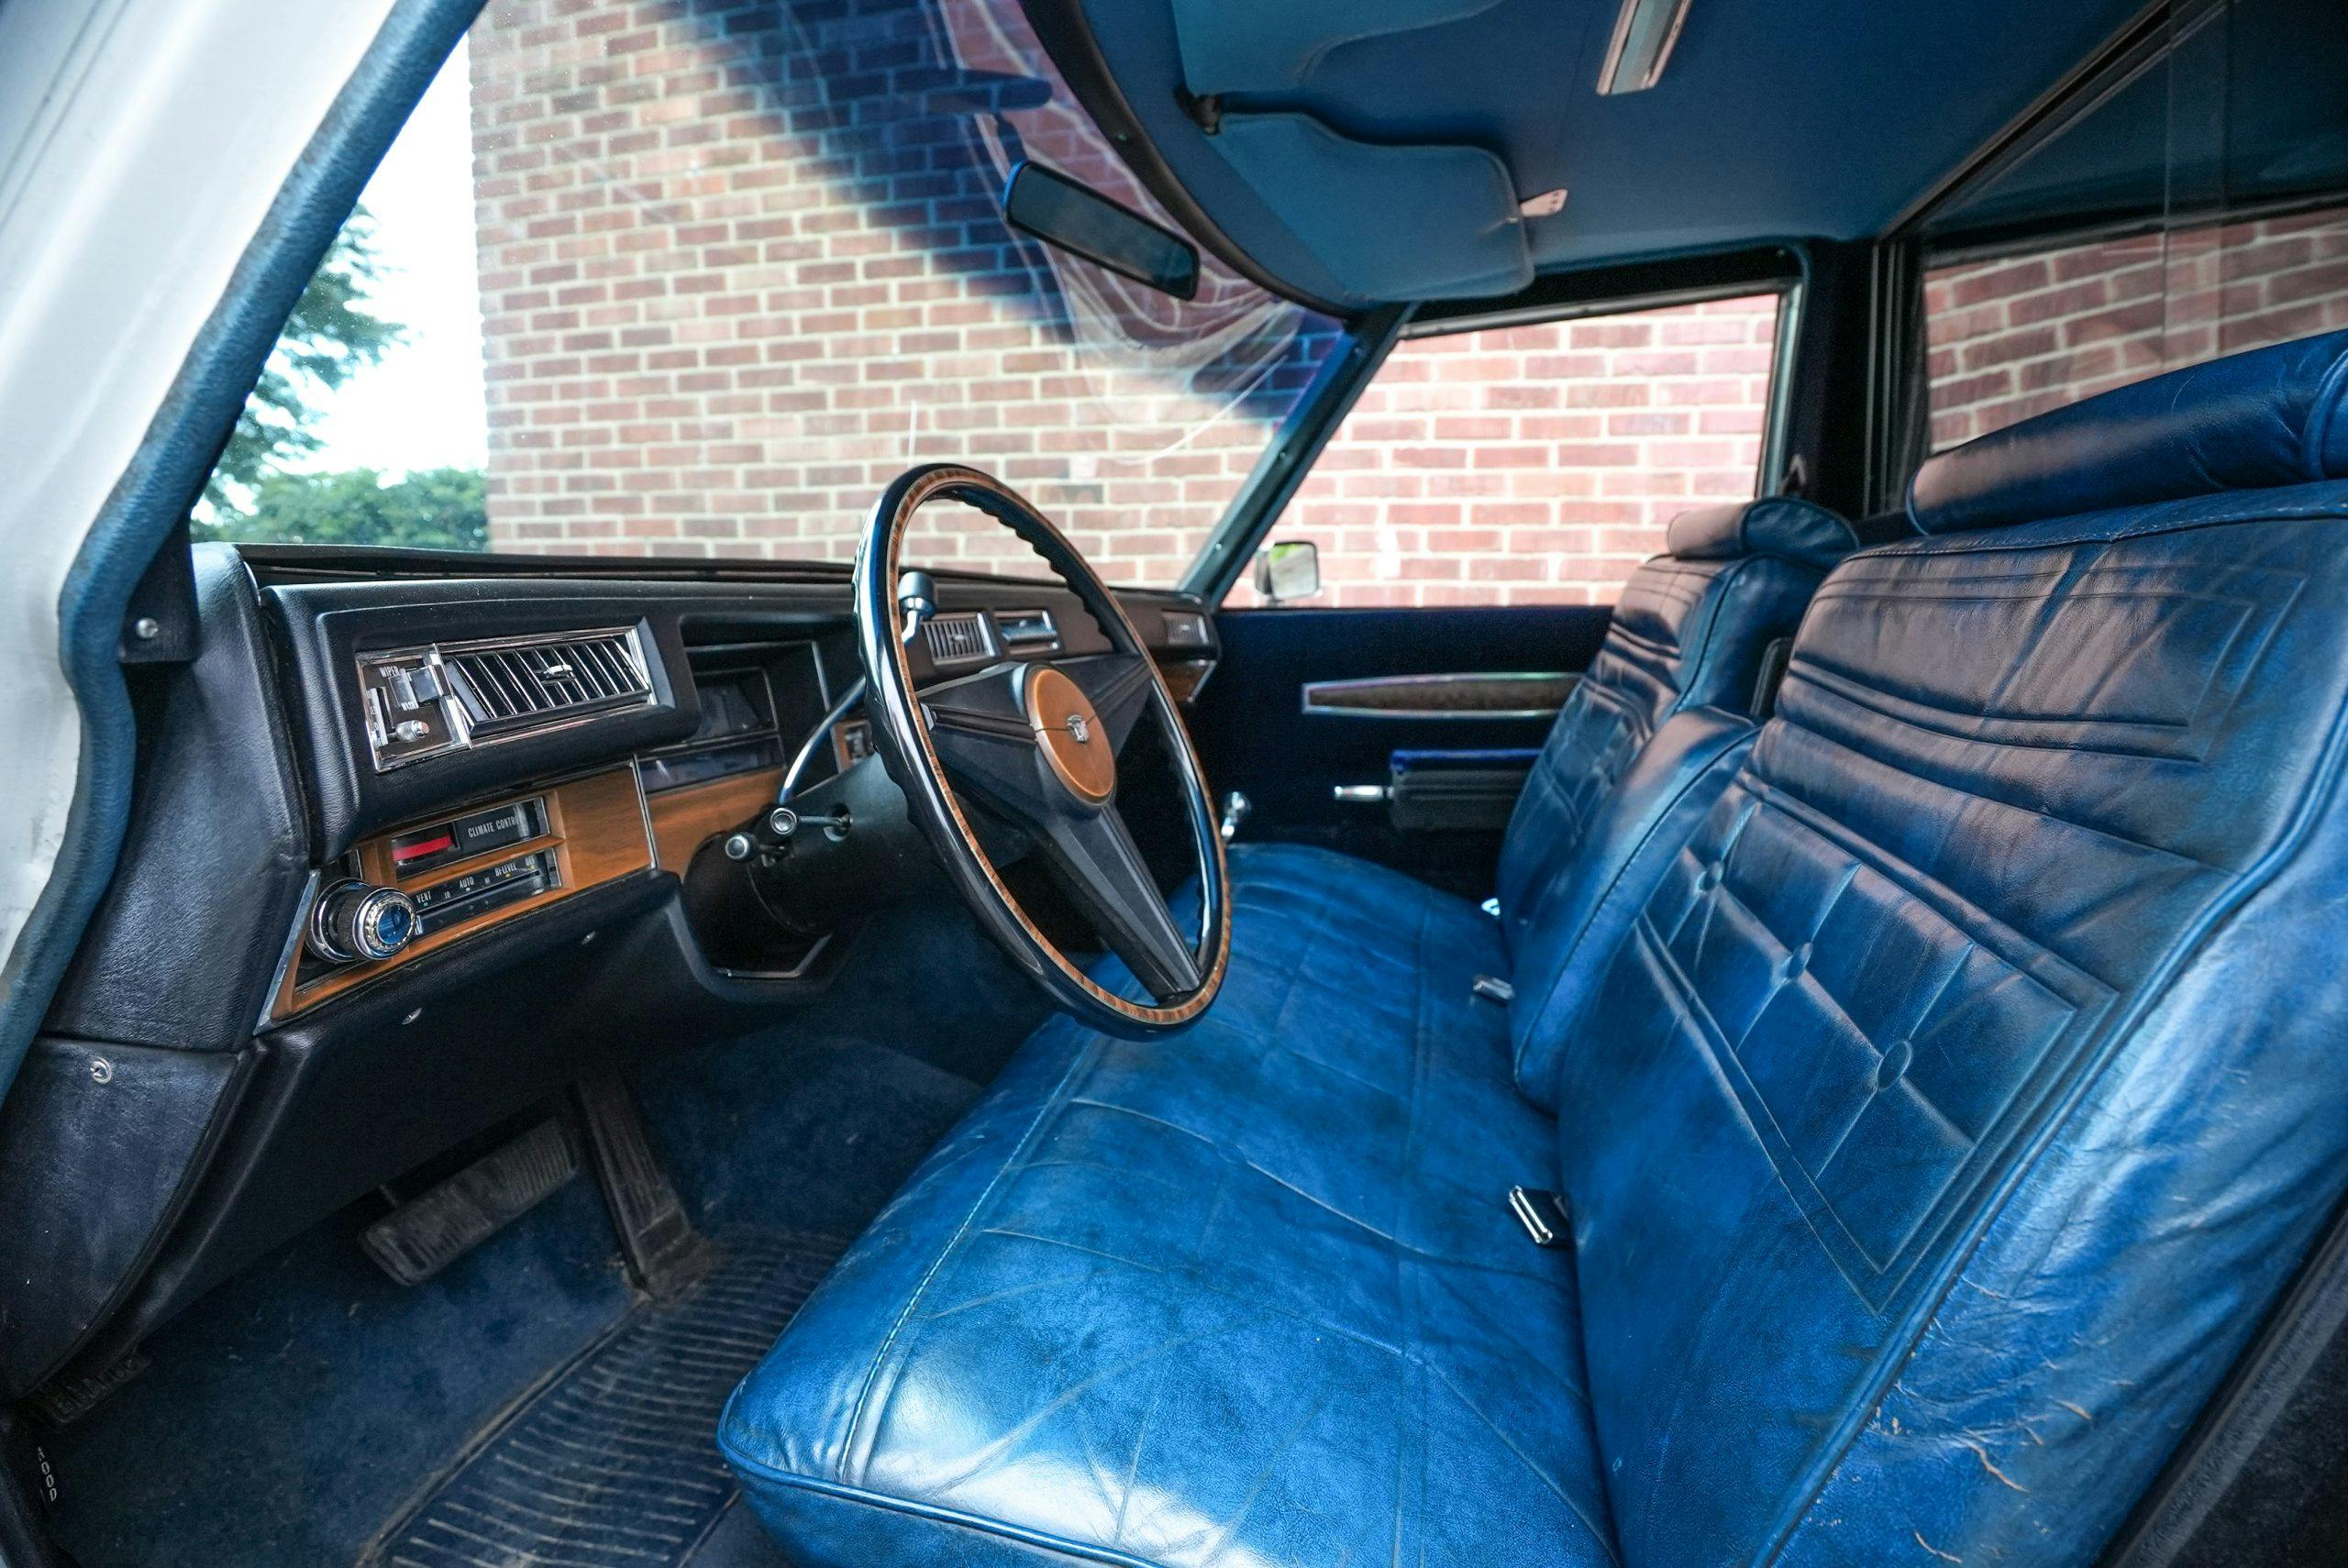 1974 Cadillac Hearse interior